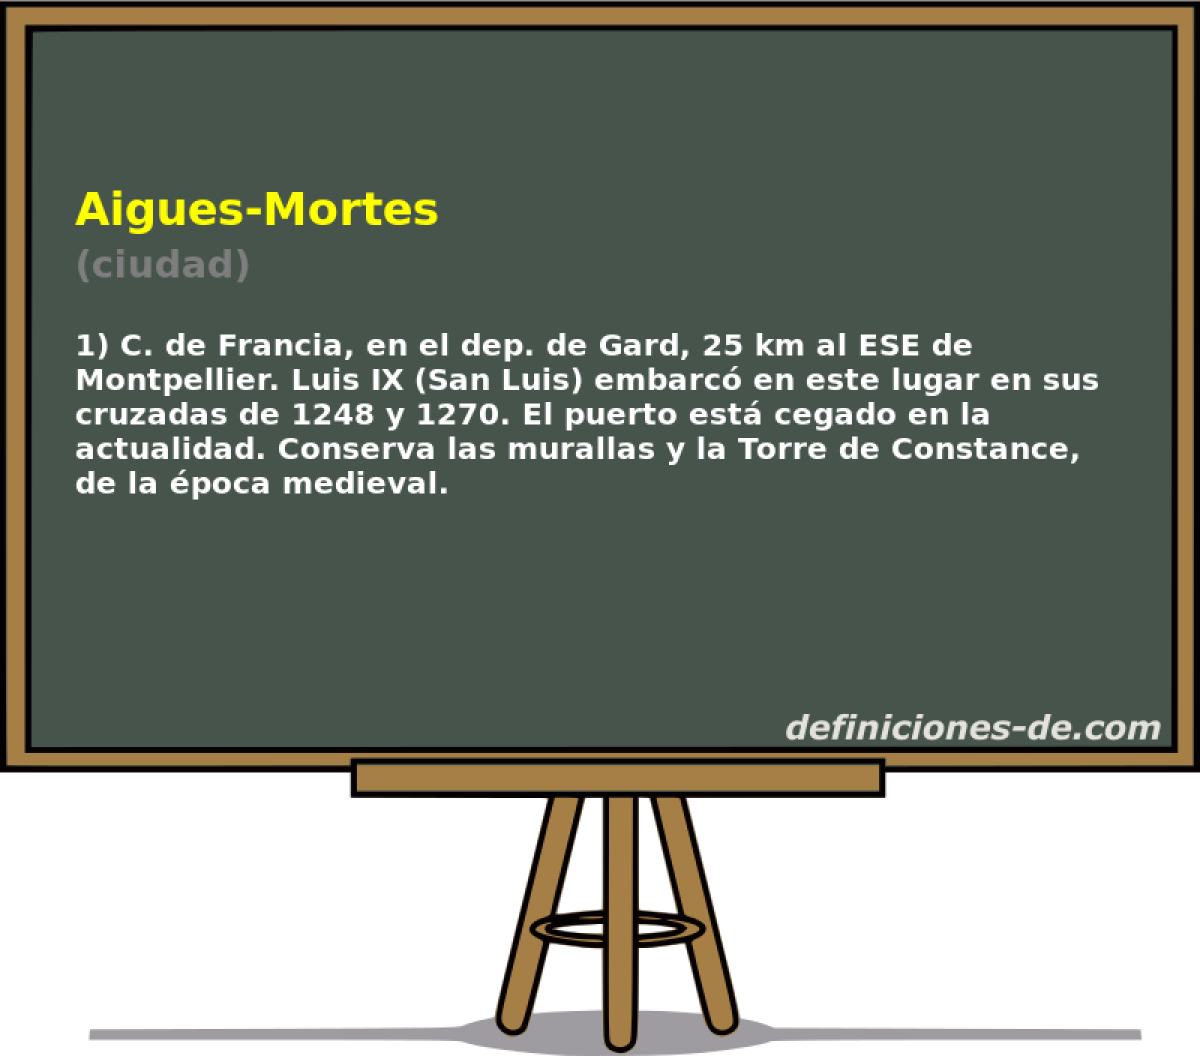 Aigues-Mortes (ciudad)